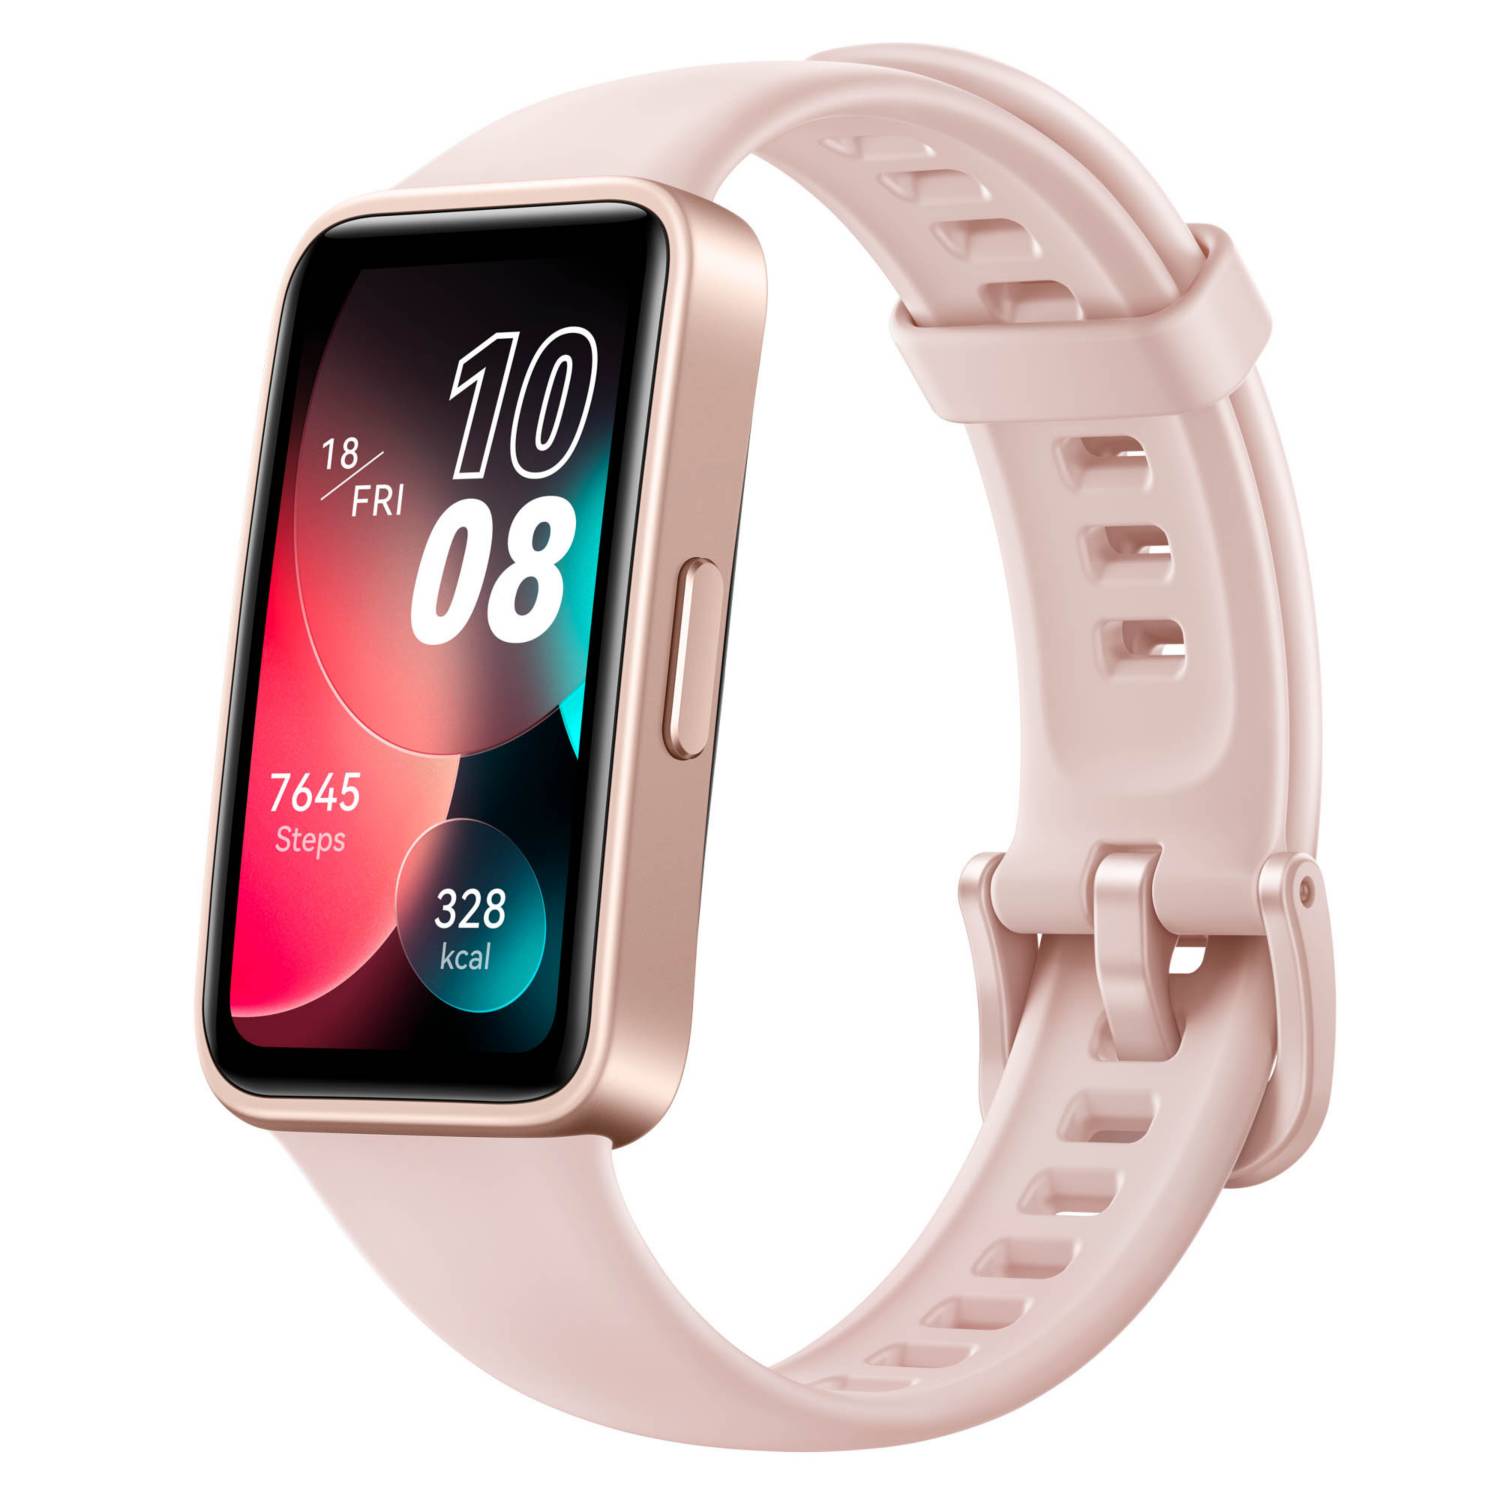 Si buscas renovar tu smartwatch, lo nuevo de Huawei seguro que